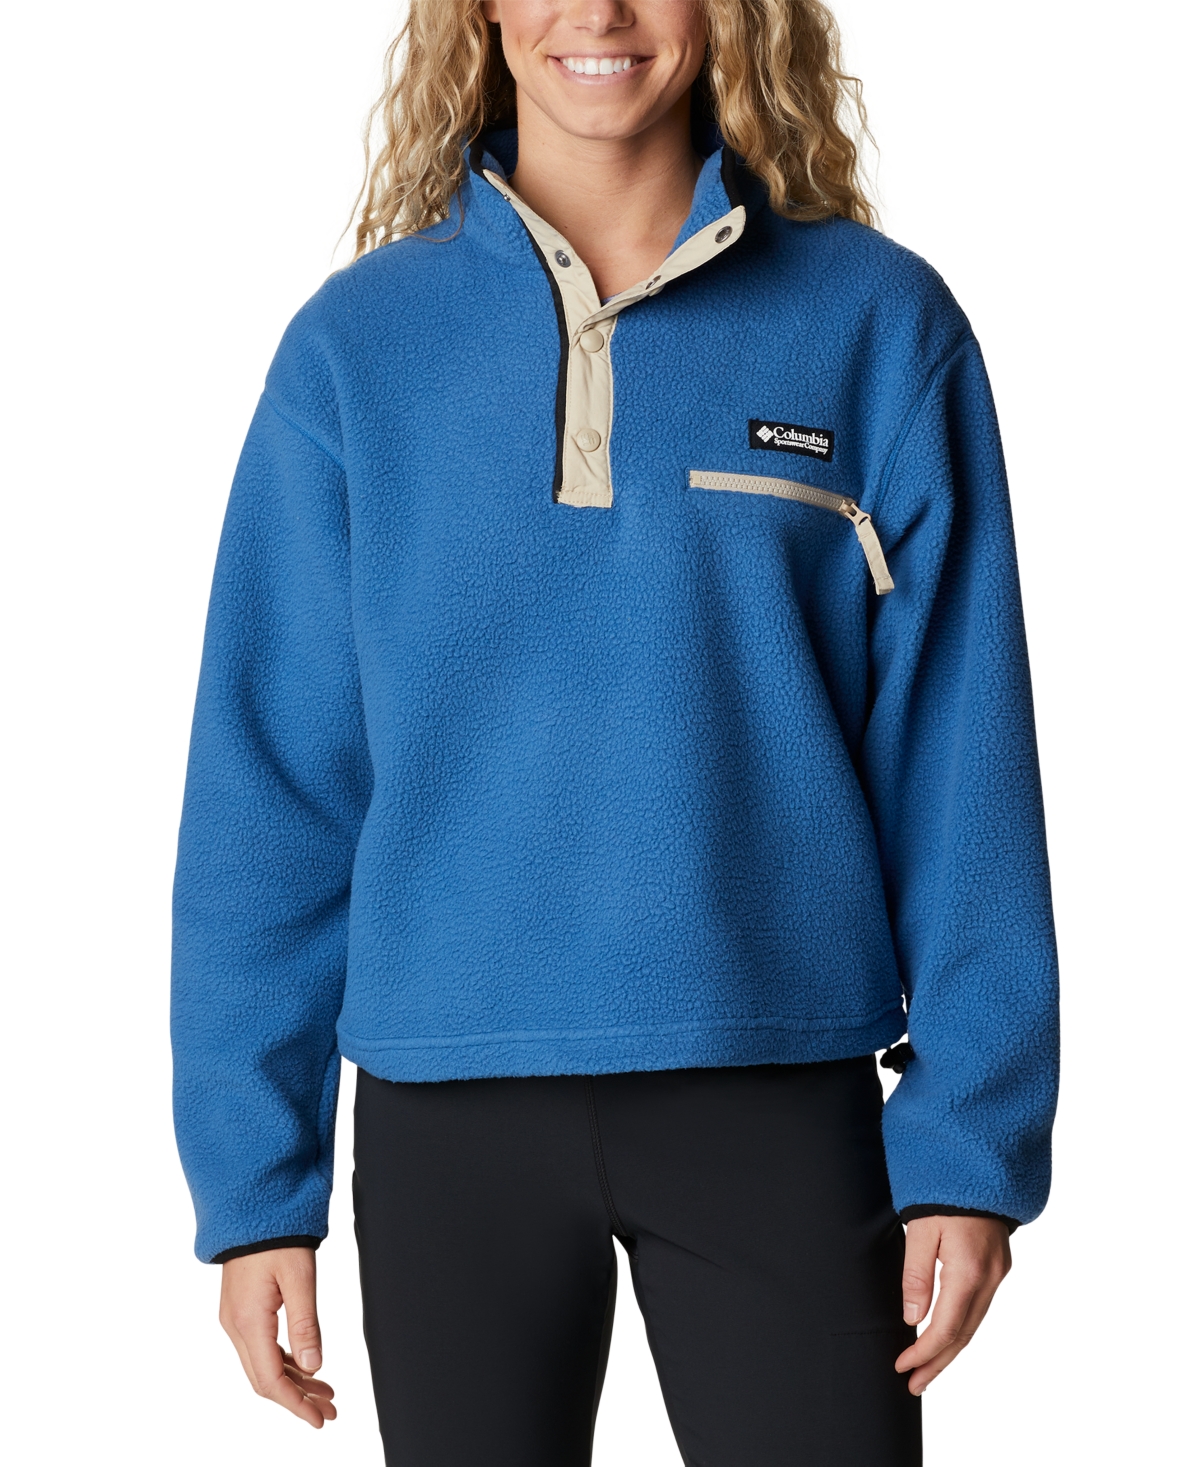  Columbia Women's Helvetia Cropped Half-Snap Pullover Sweatshirt